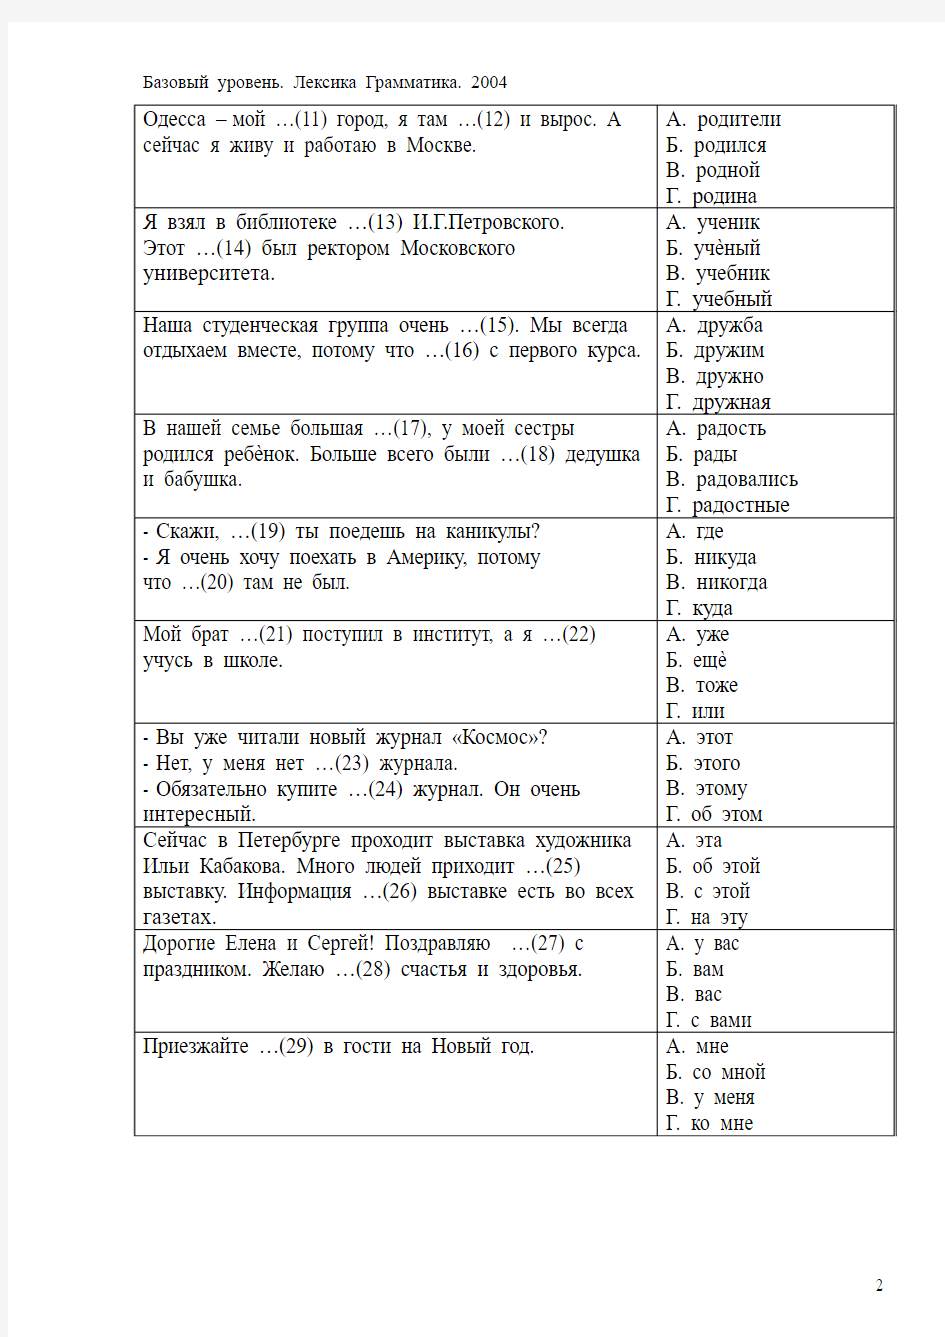 俄罗斯俄语一级考试语法选择题真题考生必载Лексика грамматика